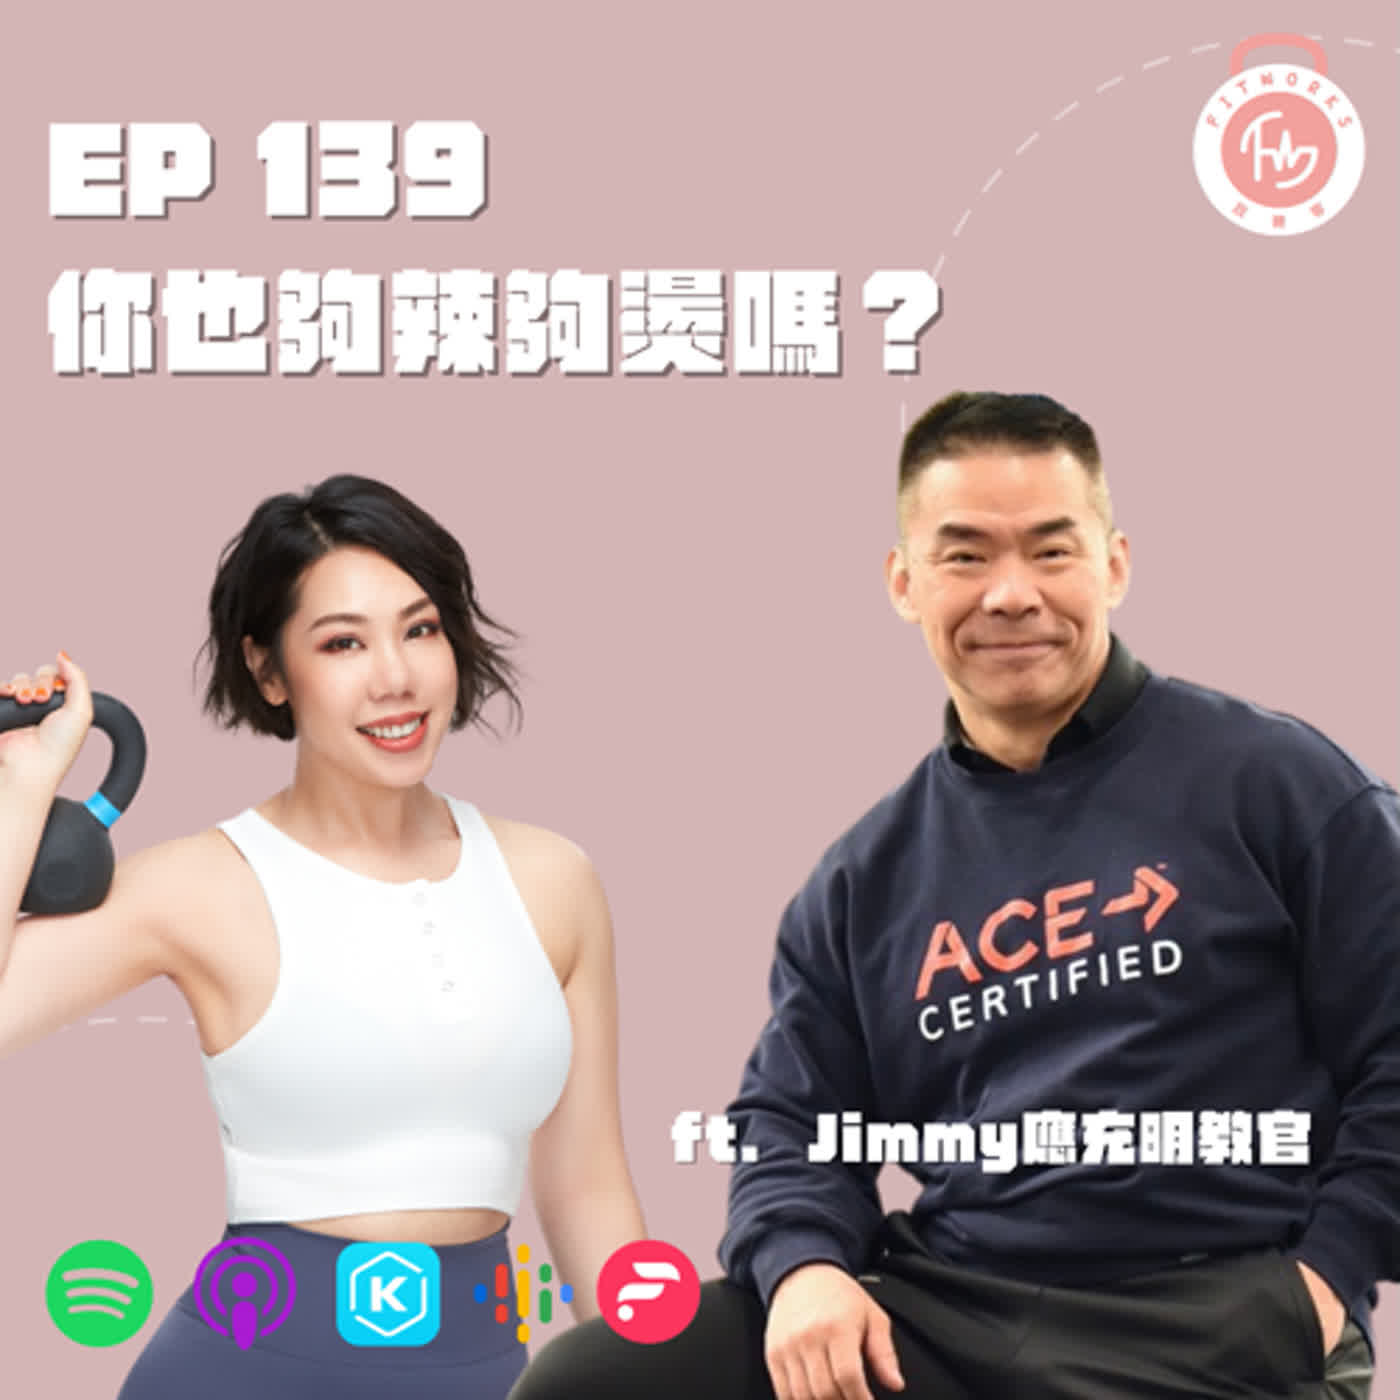 EP139-你也夠辣夠燙嗎？-ft. Jimmy應充明東方巨龍教官